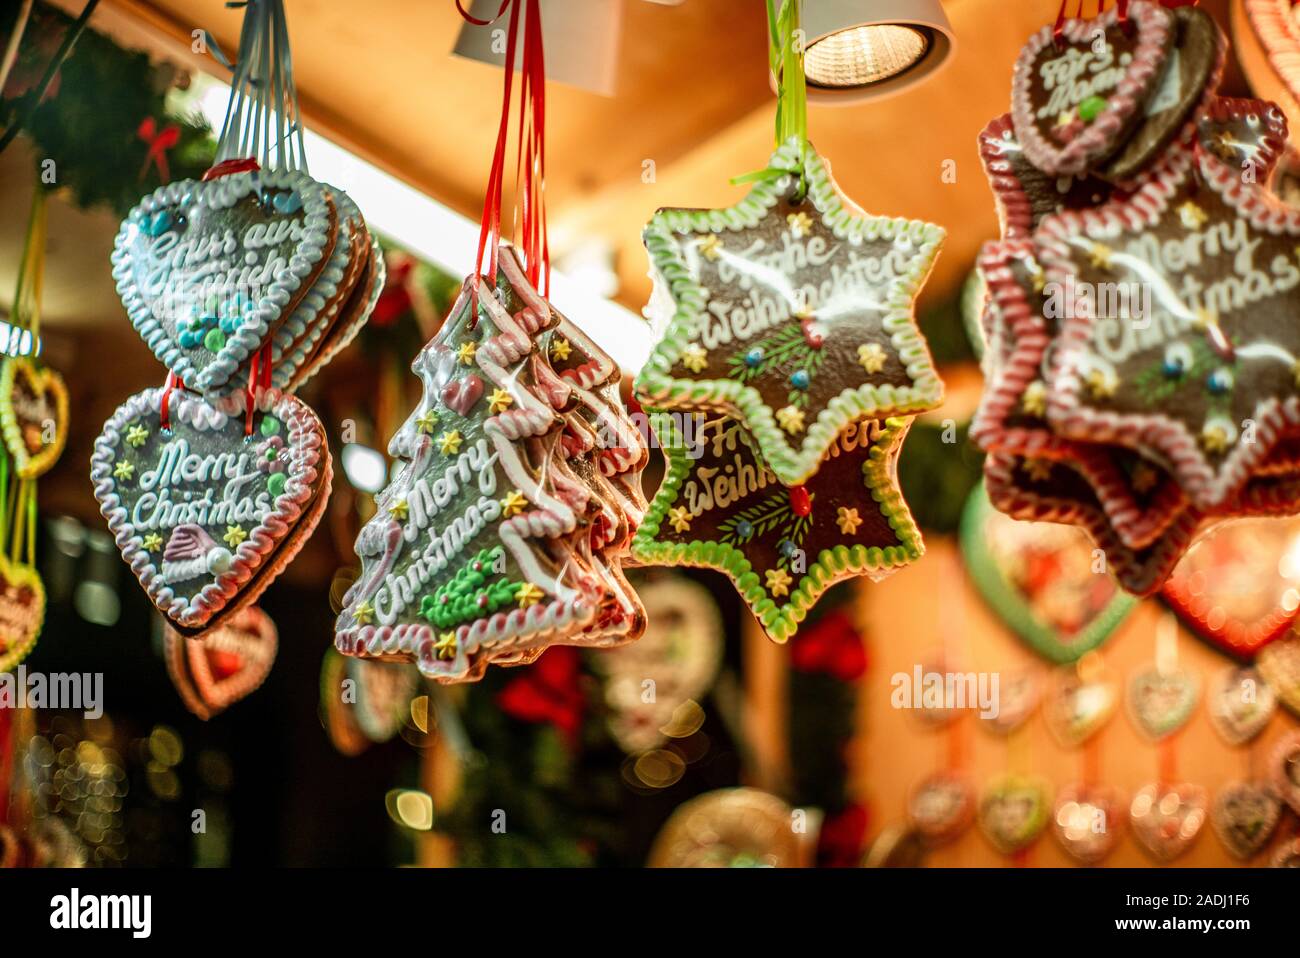 Weihnachtsmarkt In Zürich Stockfotos und -bilder Kaufen - Alamy